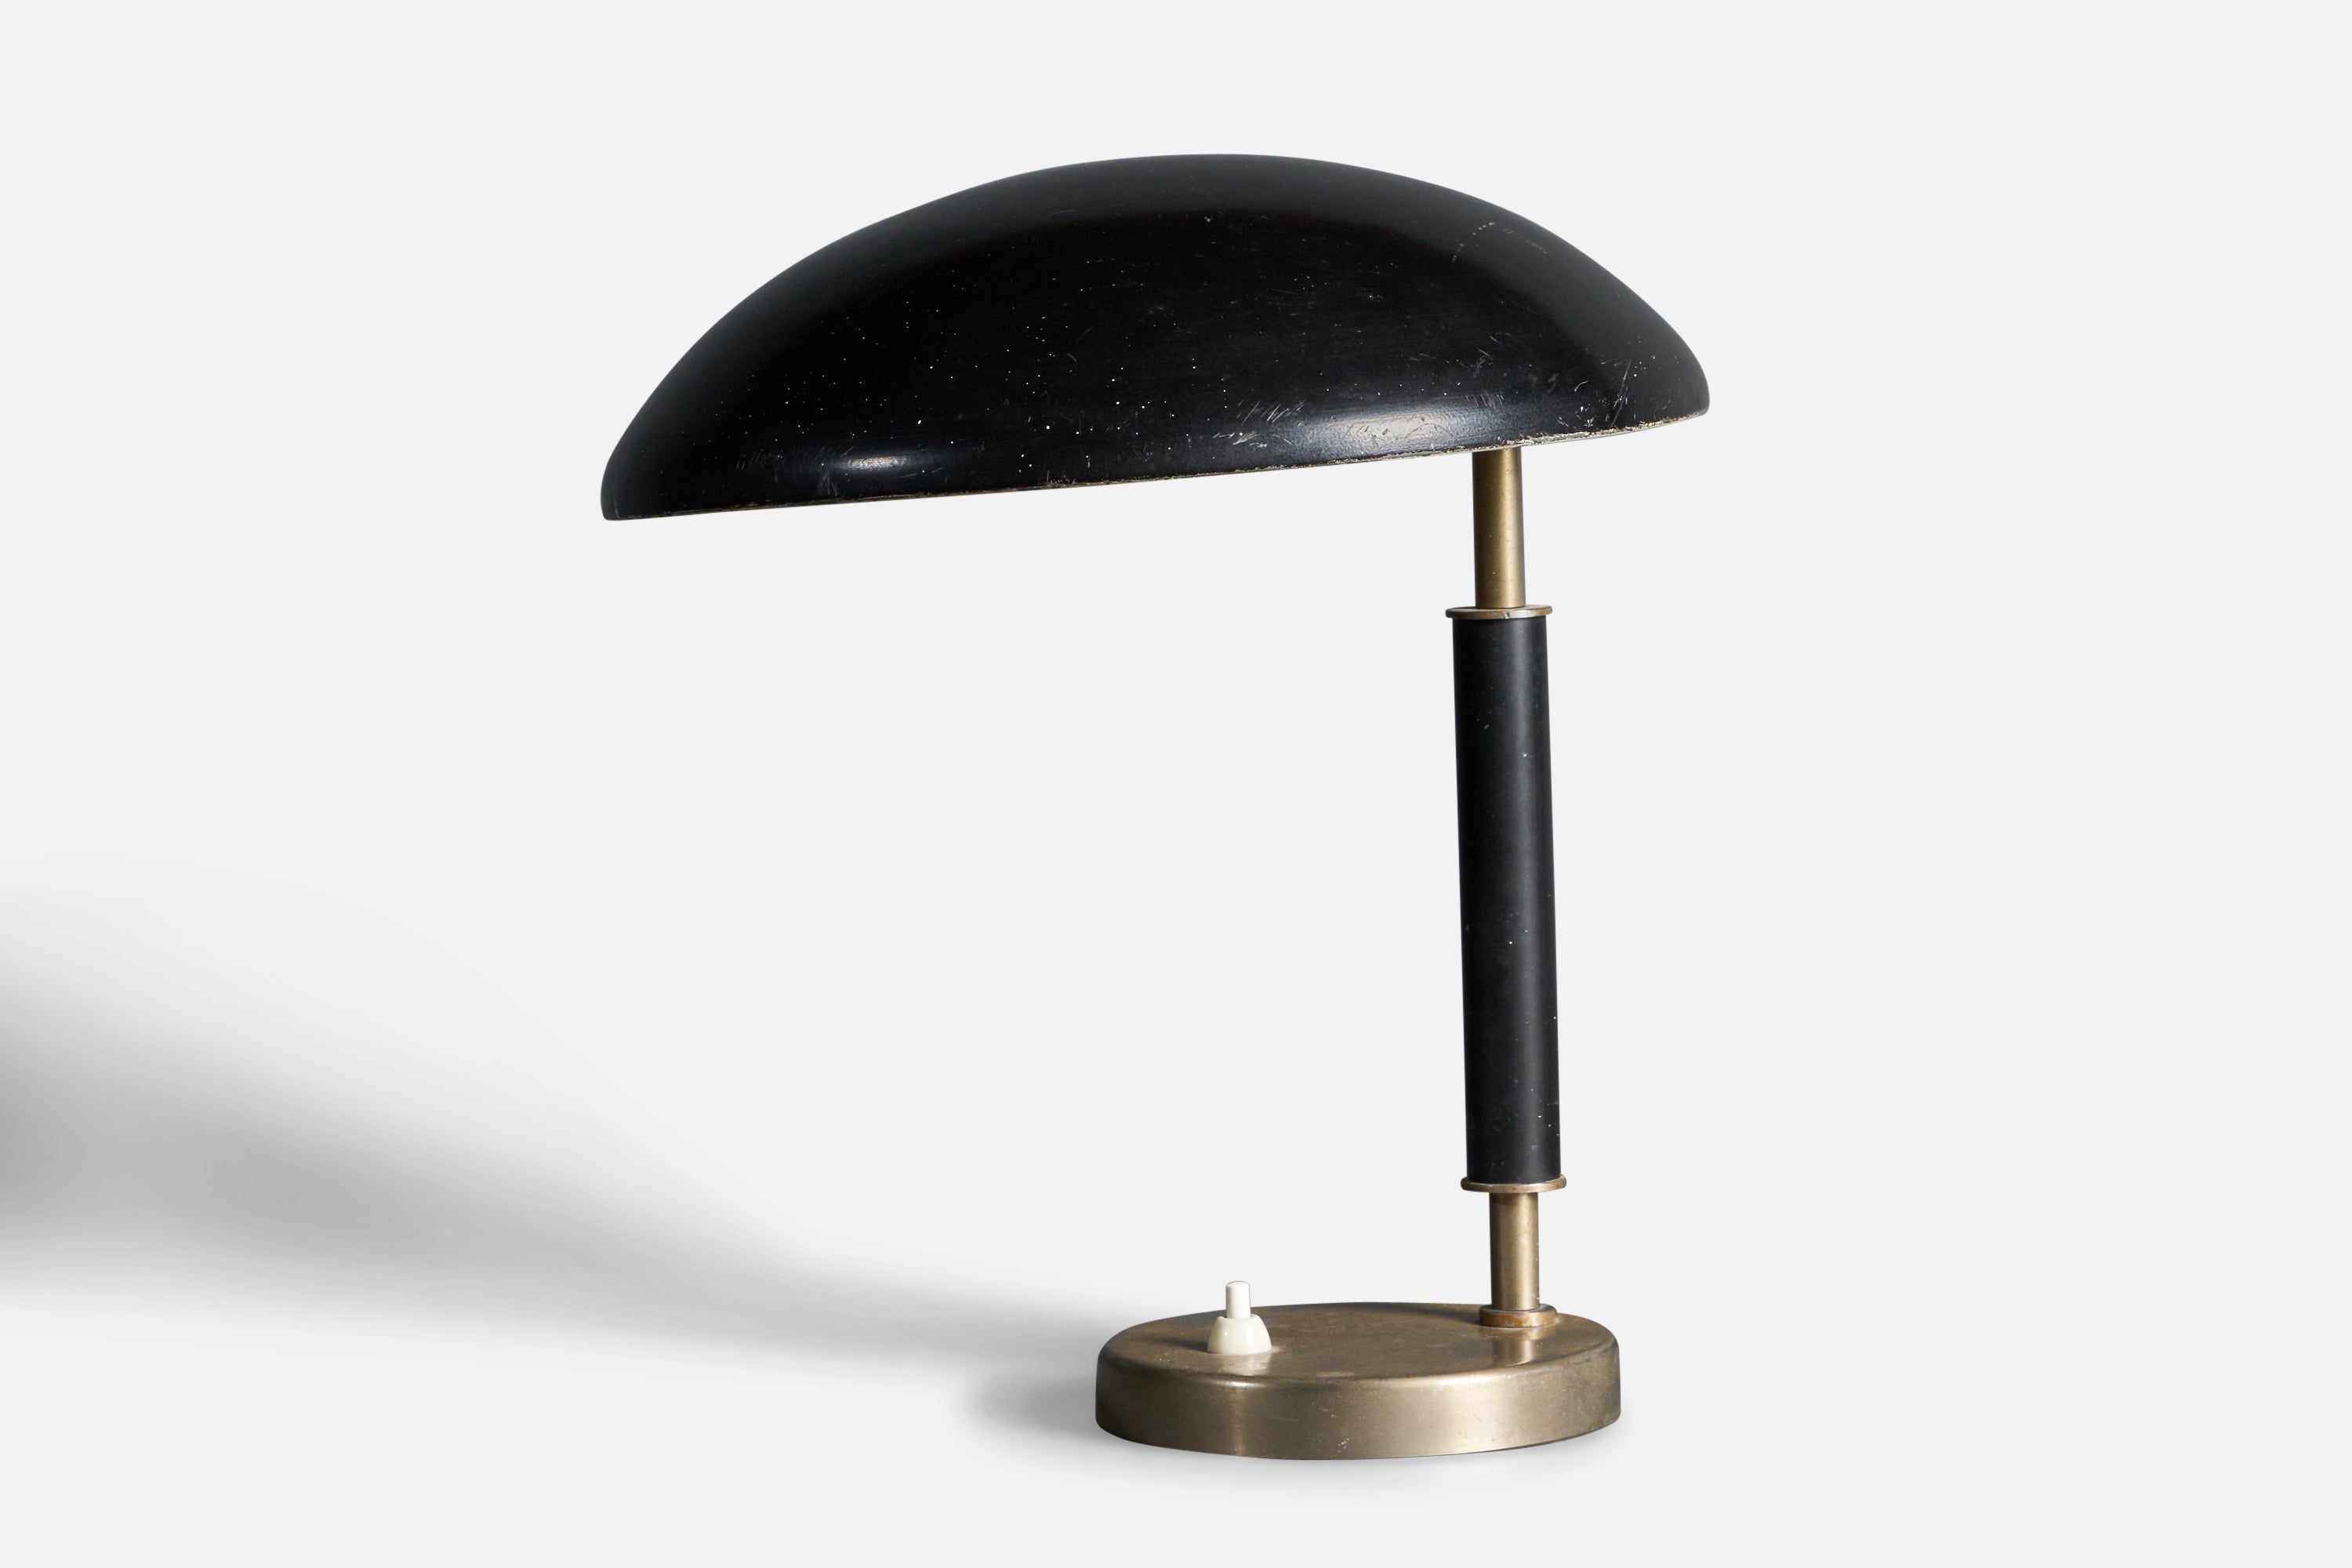 Lampe de bureau Attribution de Bhlmarks, métal laqué noir, bois teinté acier